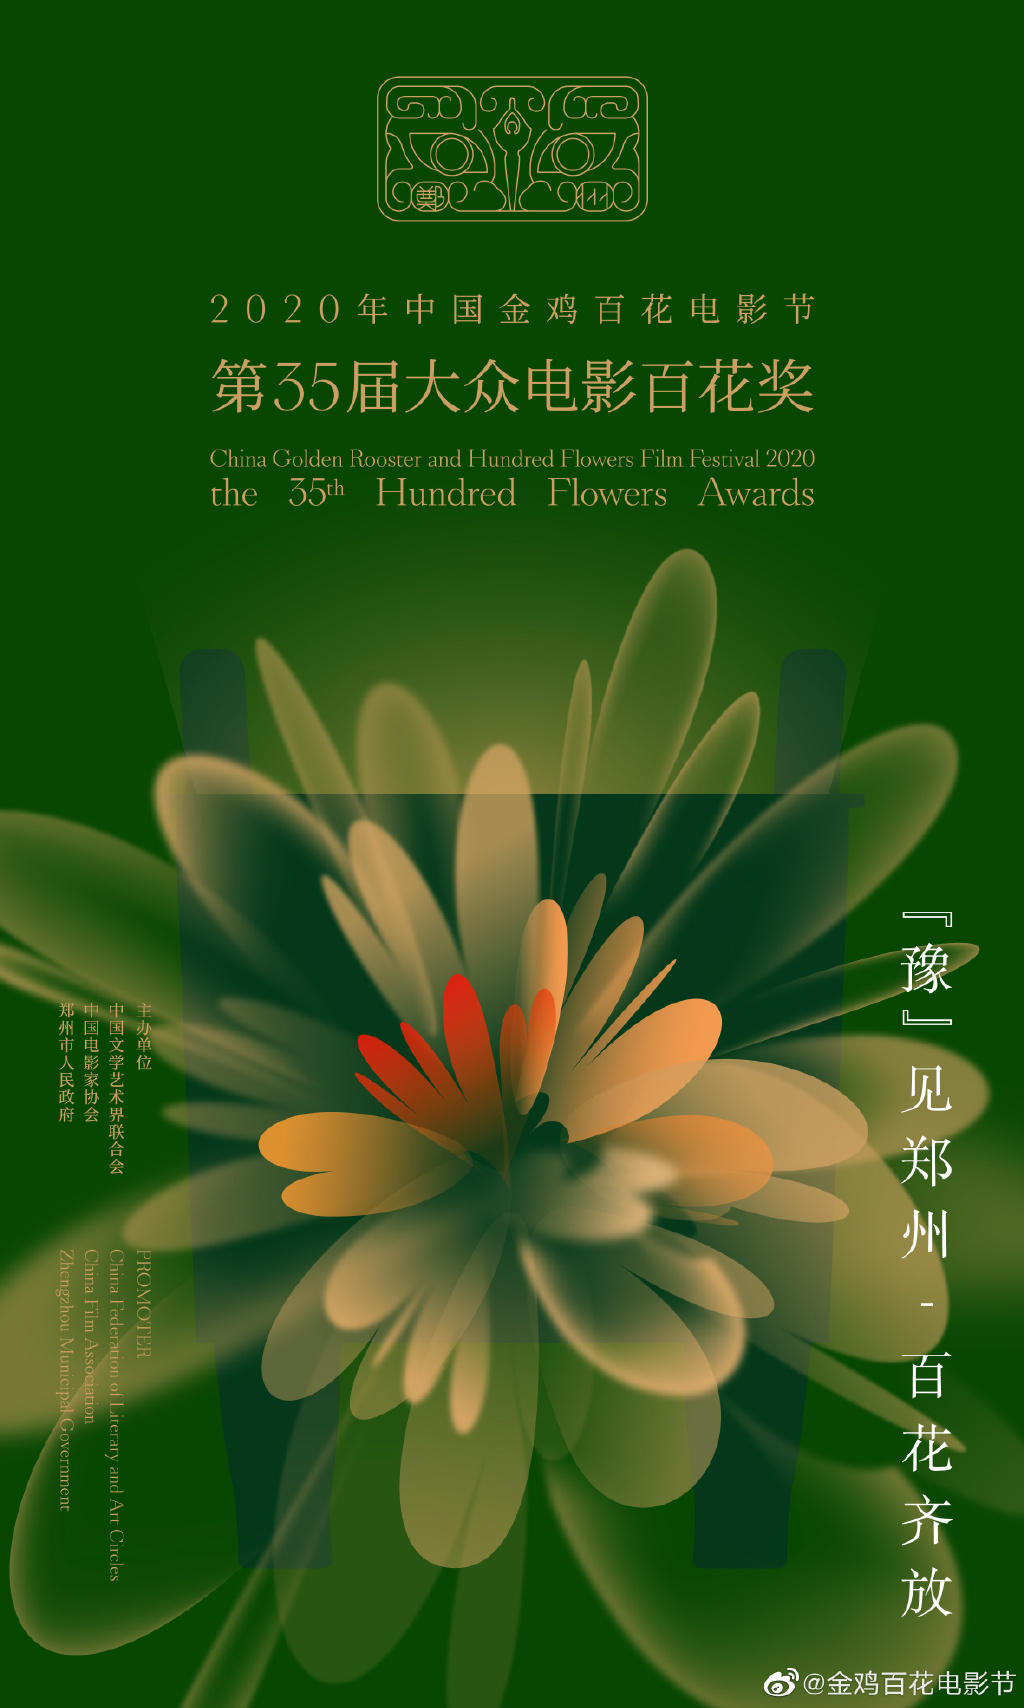 2020年中国金鸡百花电影节发布电影节海报